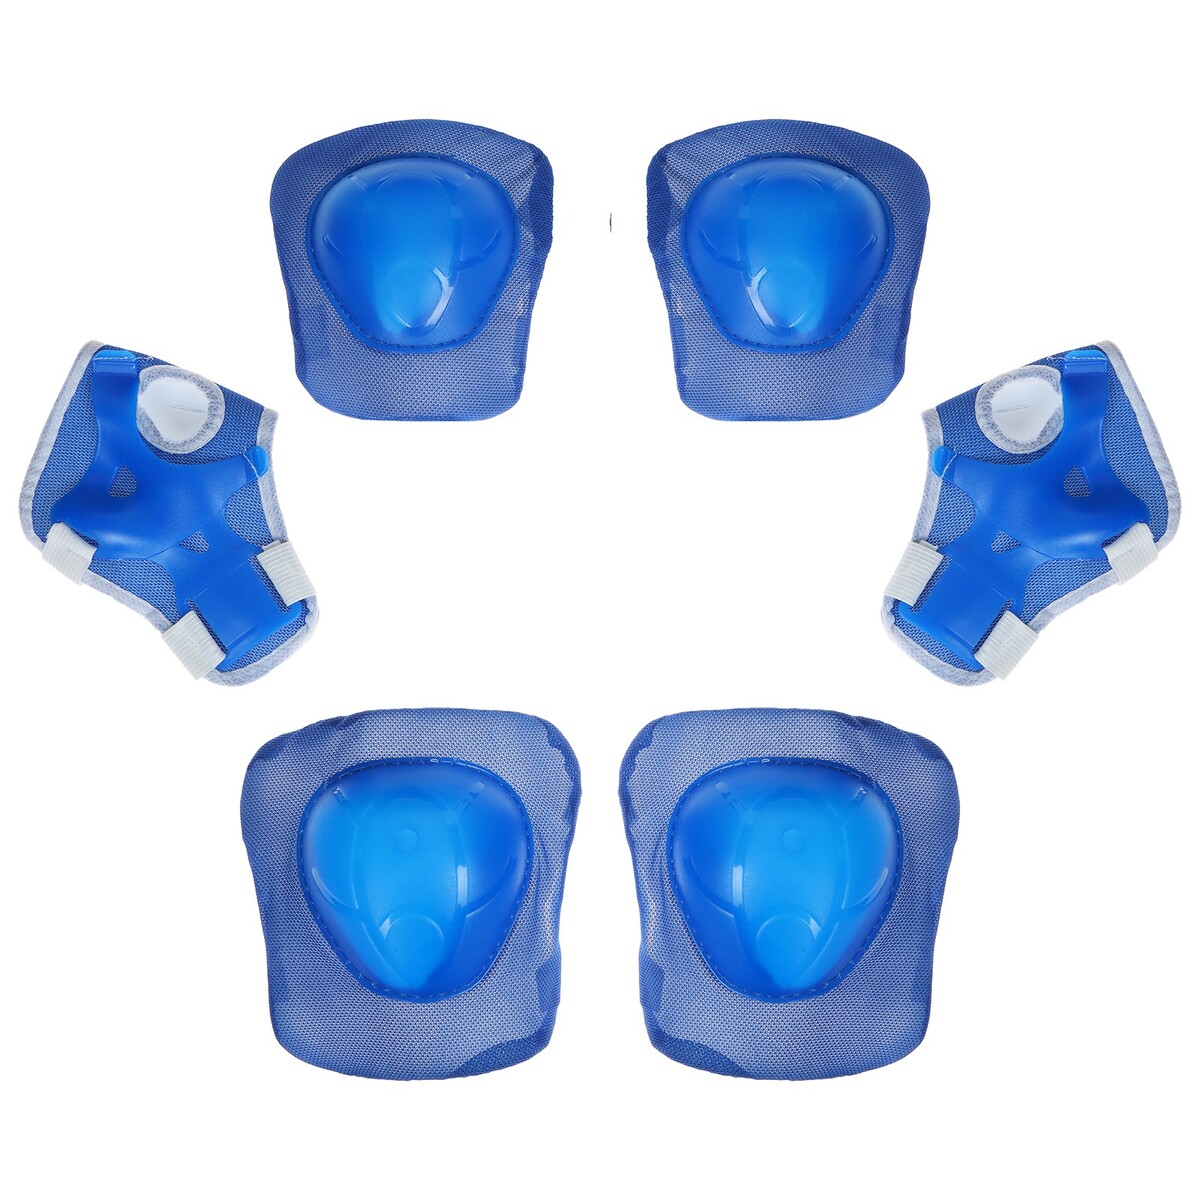 Защита роликовая, размер универсальный, цвет синий ONLITOP